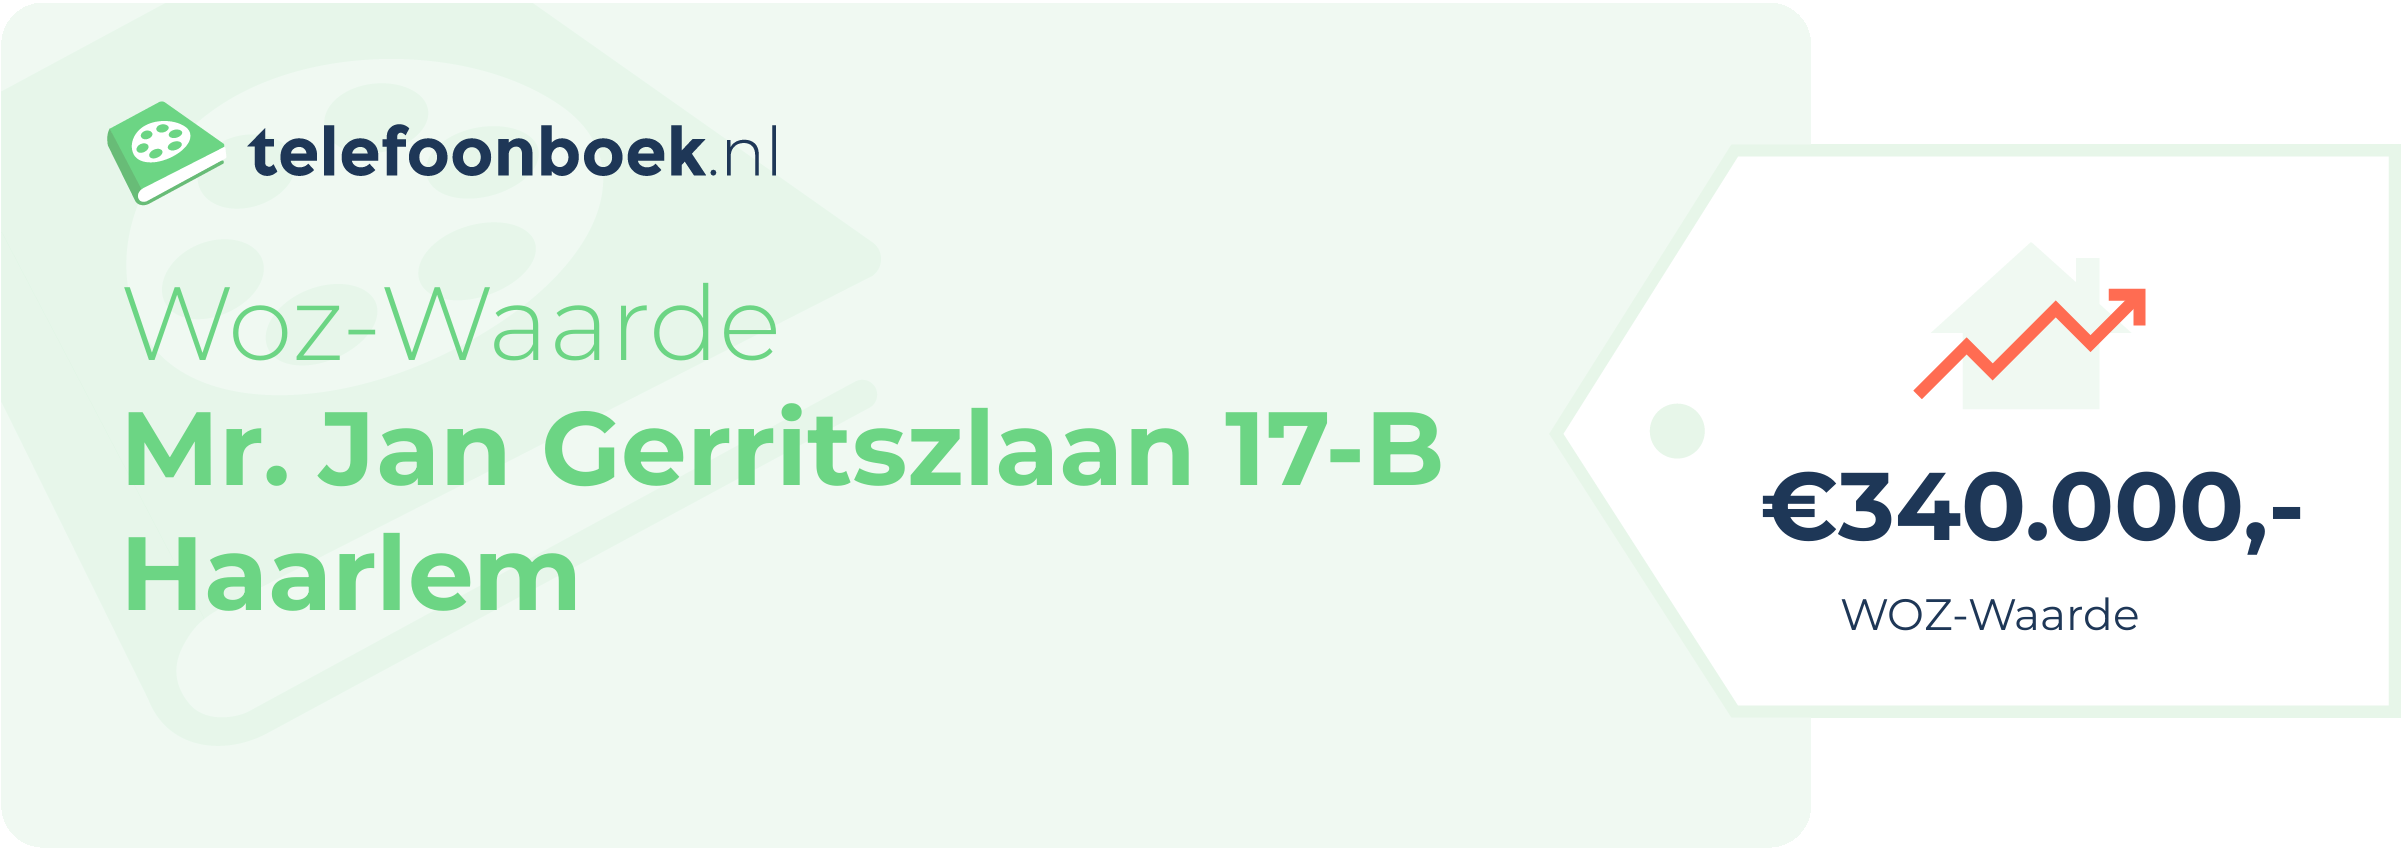 WOZ-waarde Mr. Jan Gerritszlaan 17-B Haarlem